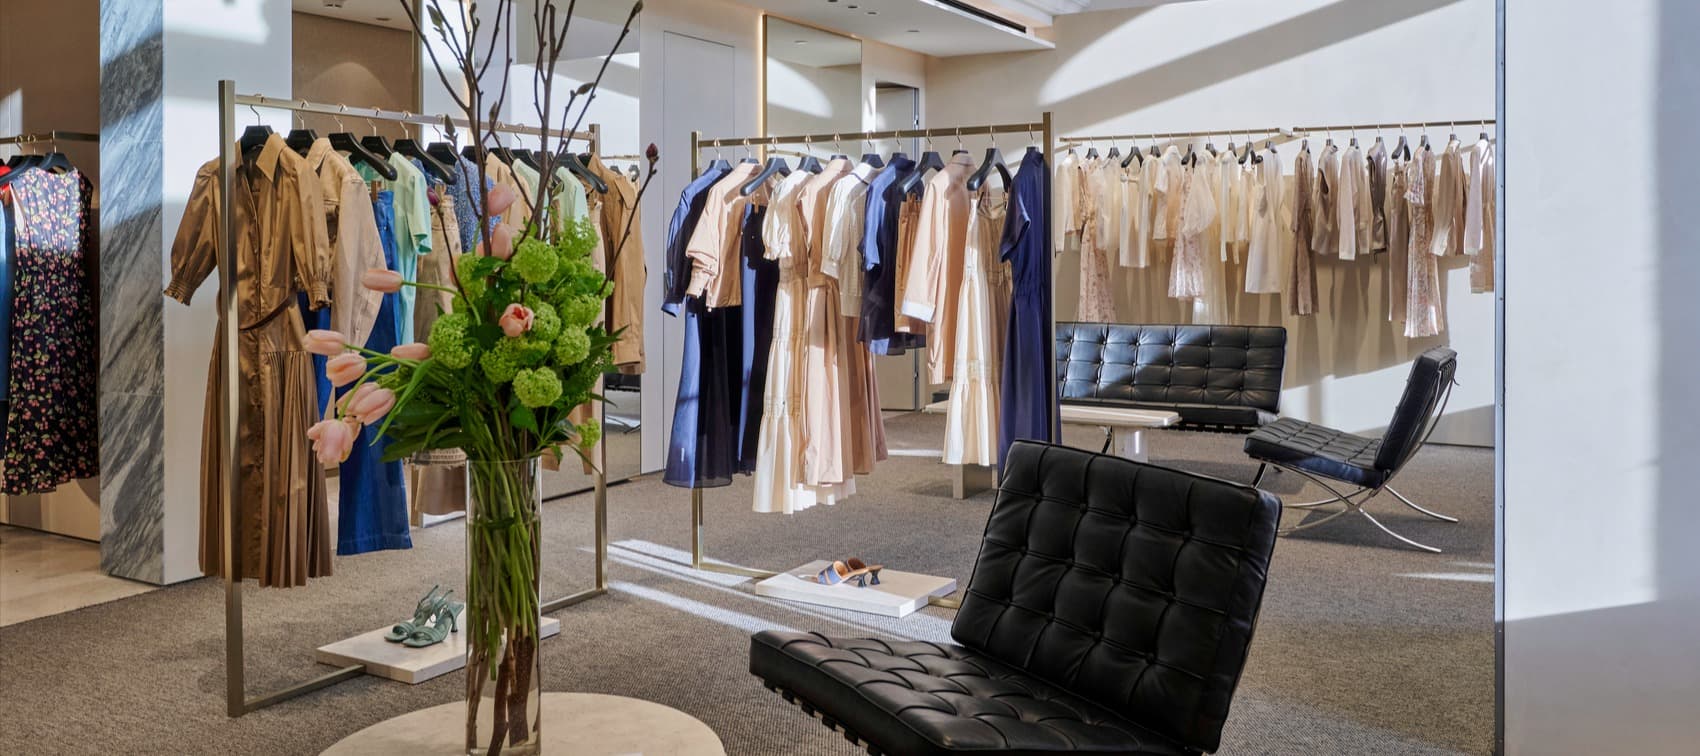 Фото новости: "В ГУМе на месте бывшего бутика Prada открылся магазин китайского бренда Ellassay"